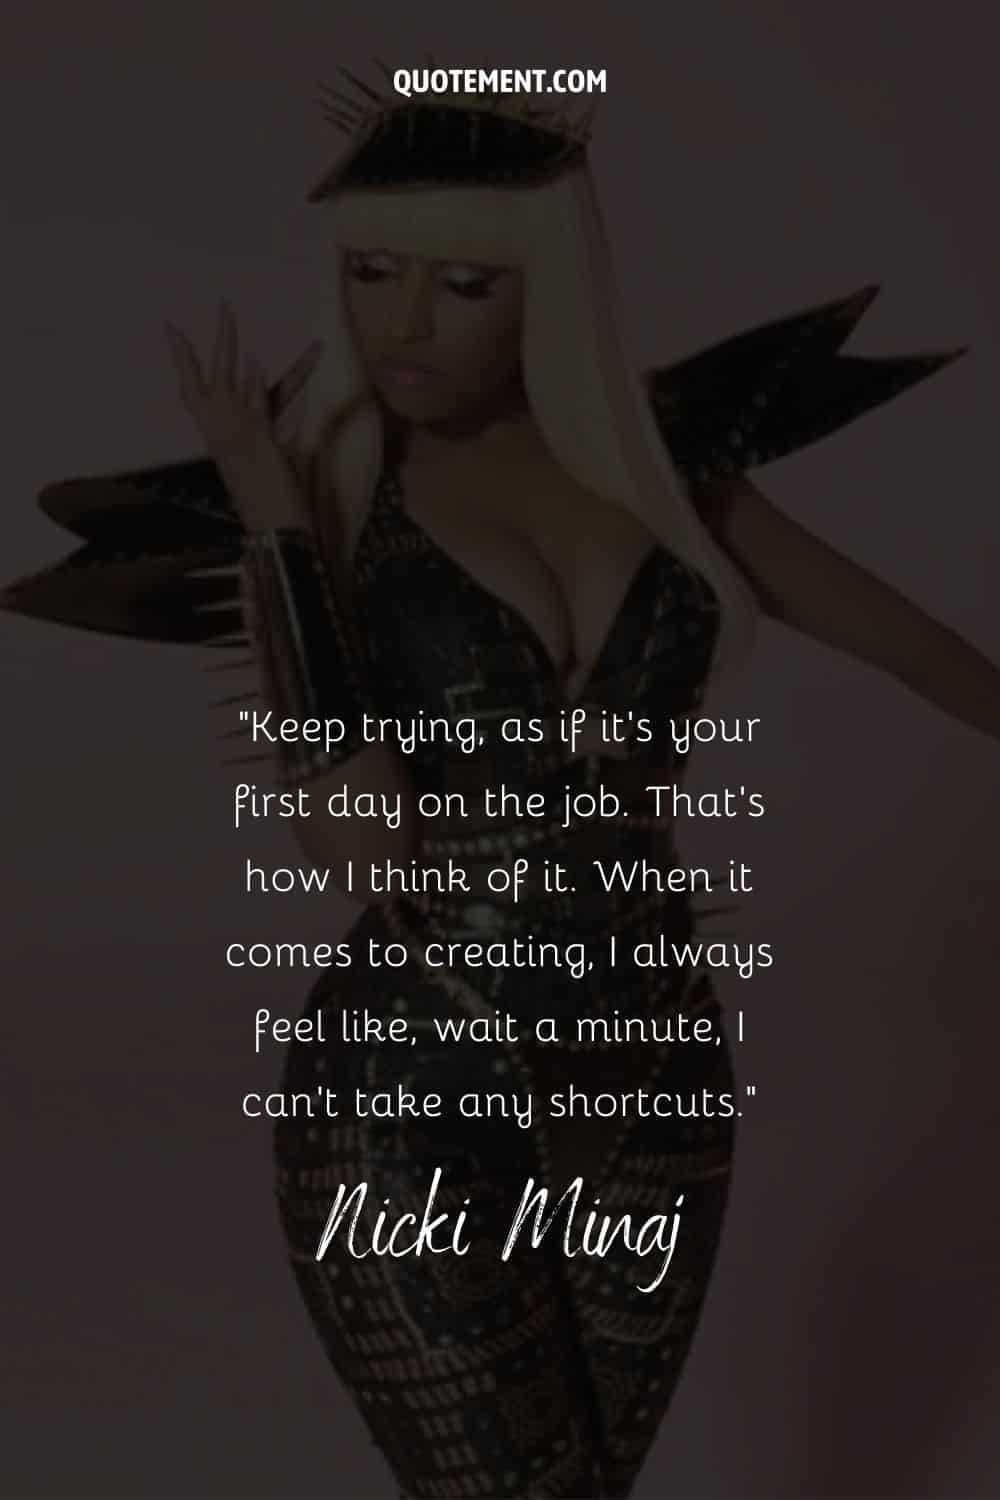 Cita inspiradora de Nicki y su foto de fondo, también